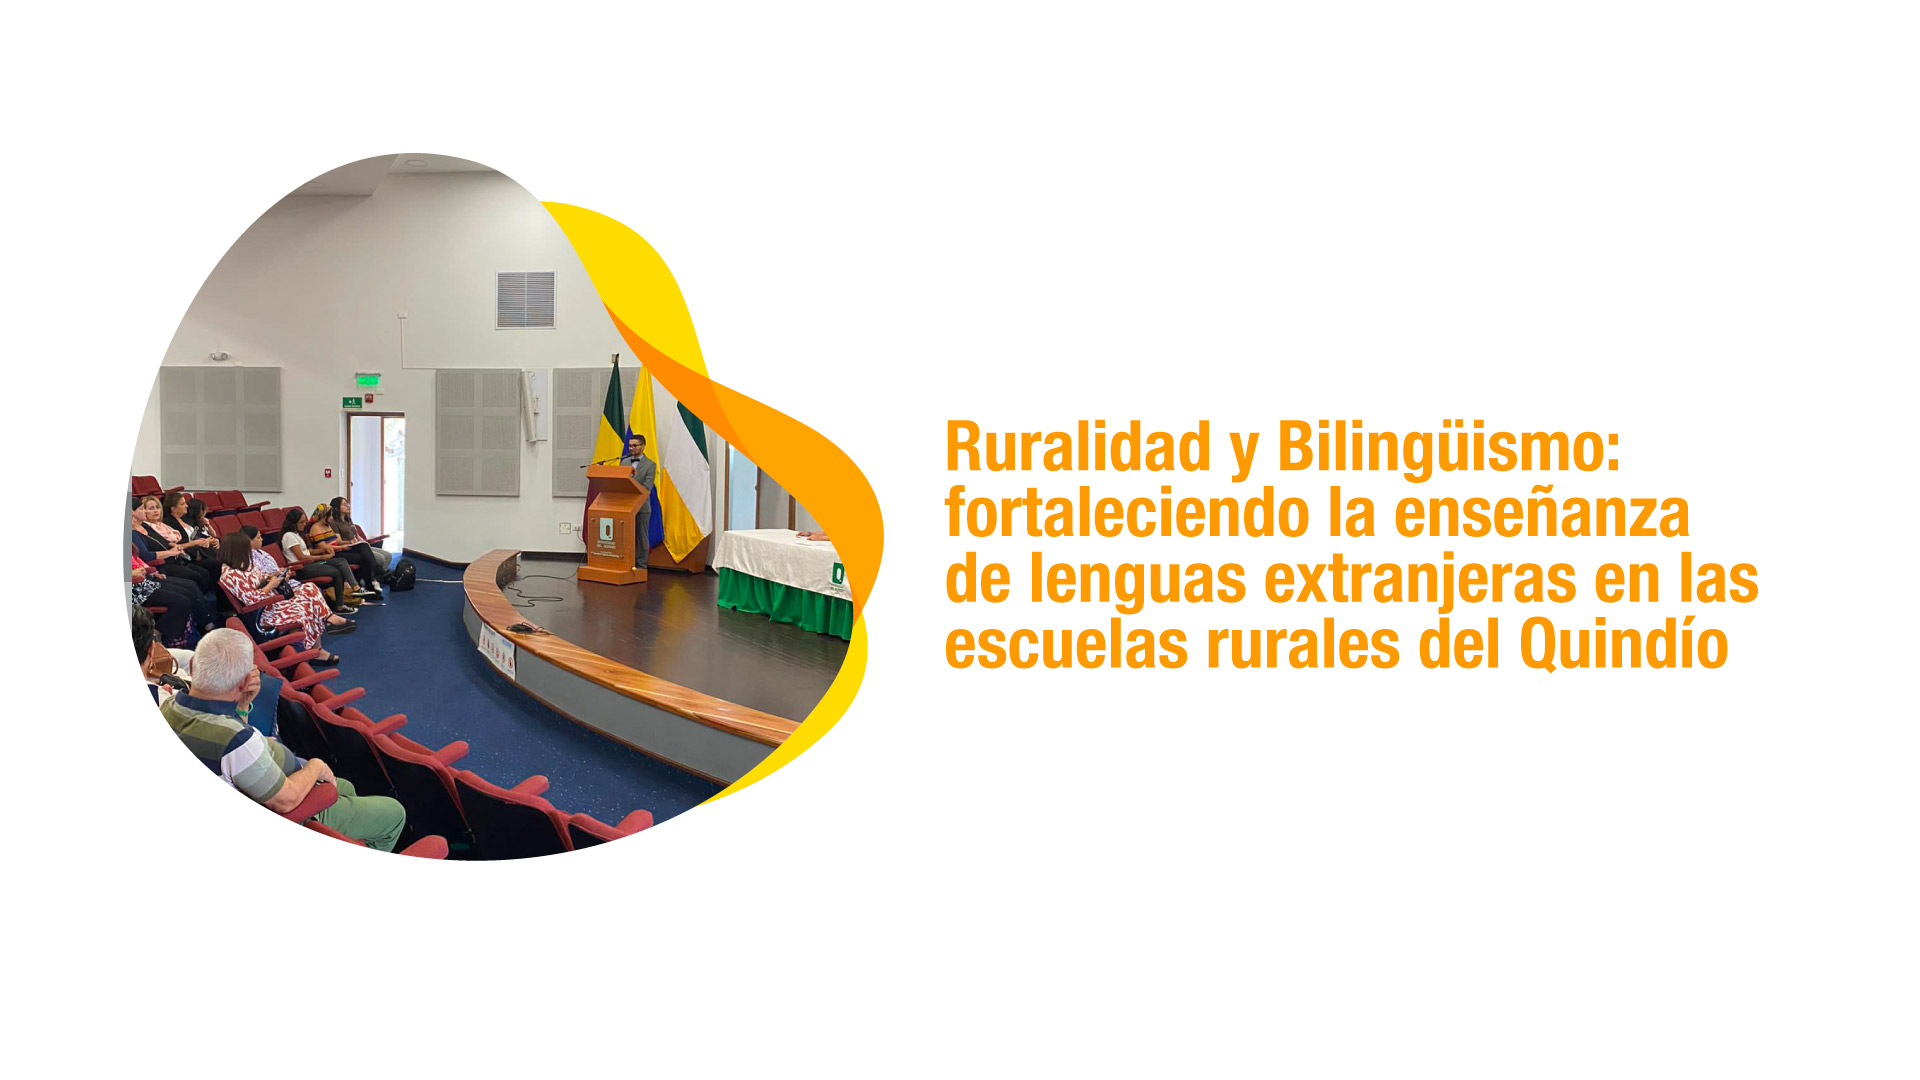 Ruralidad y Bilingüismo: fortaleciendo la enseñanza de lenguas extranjeras en las escuelas rurales del Quindío